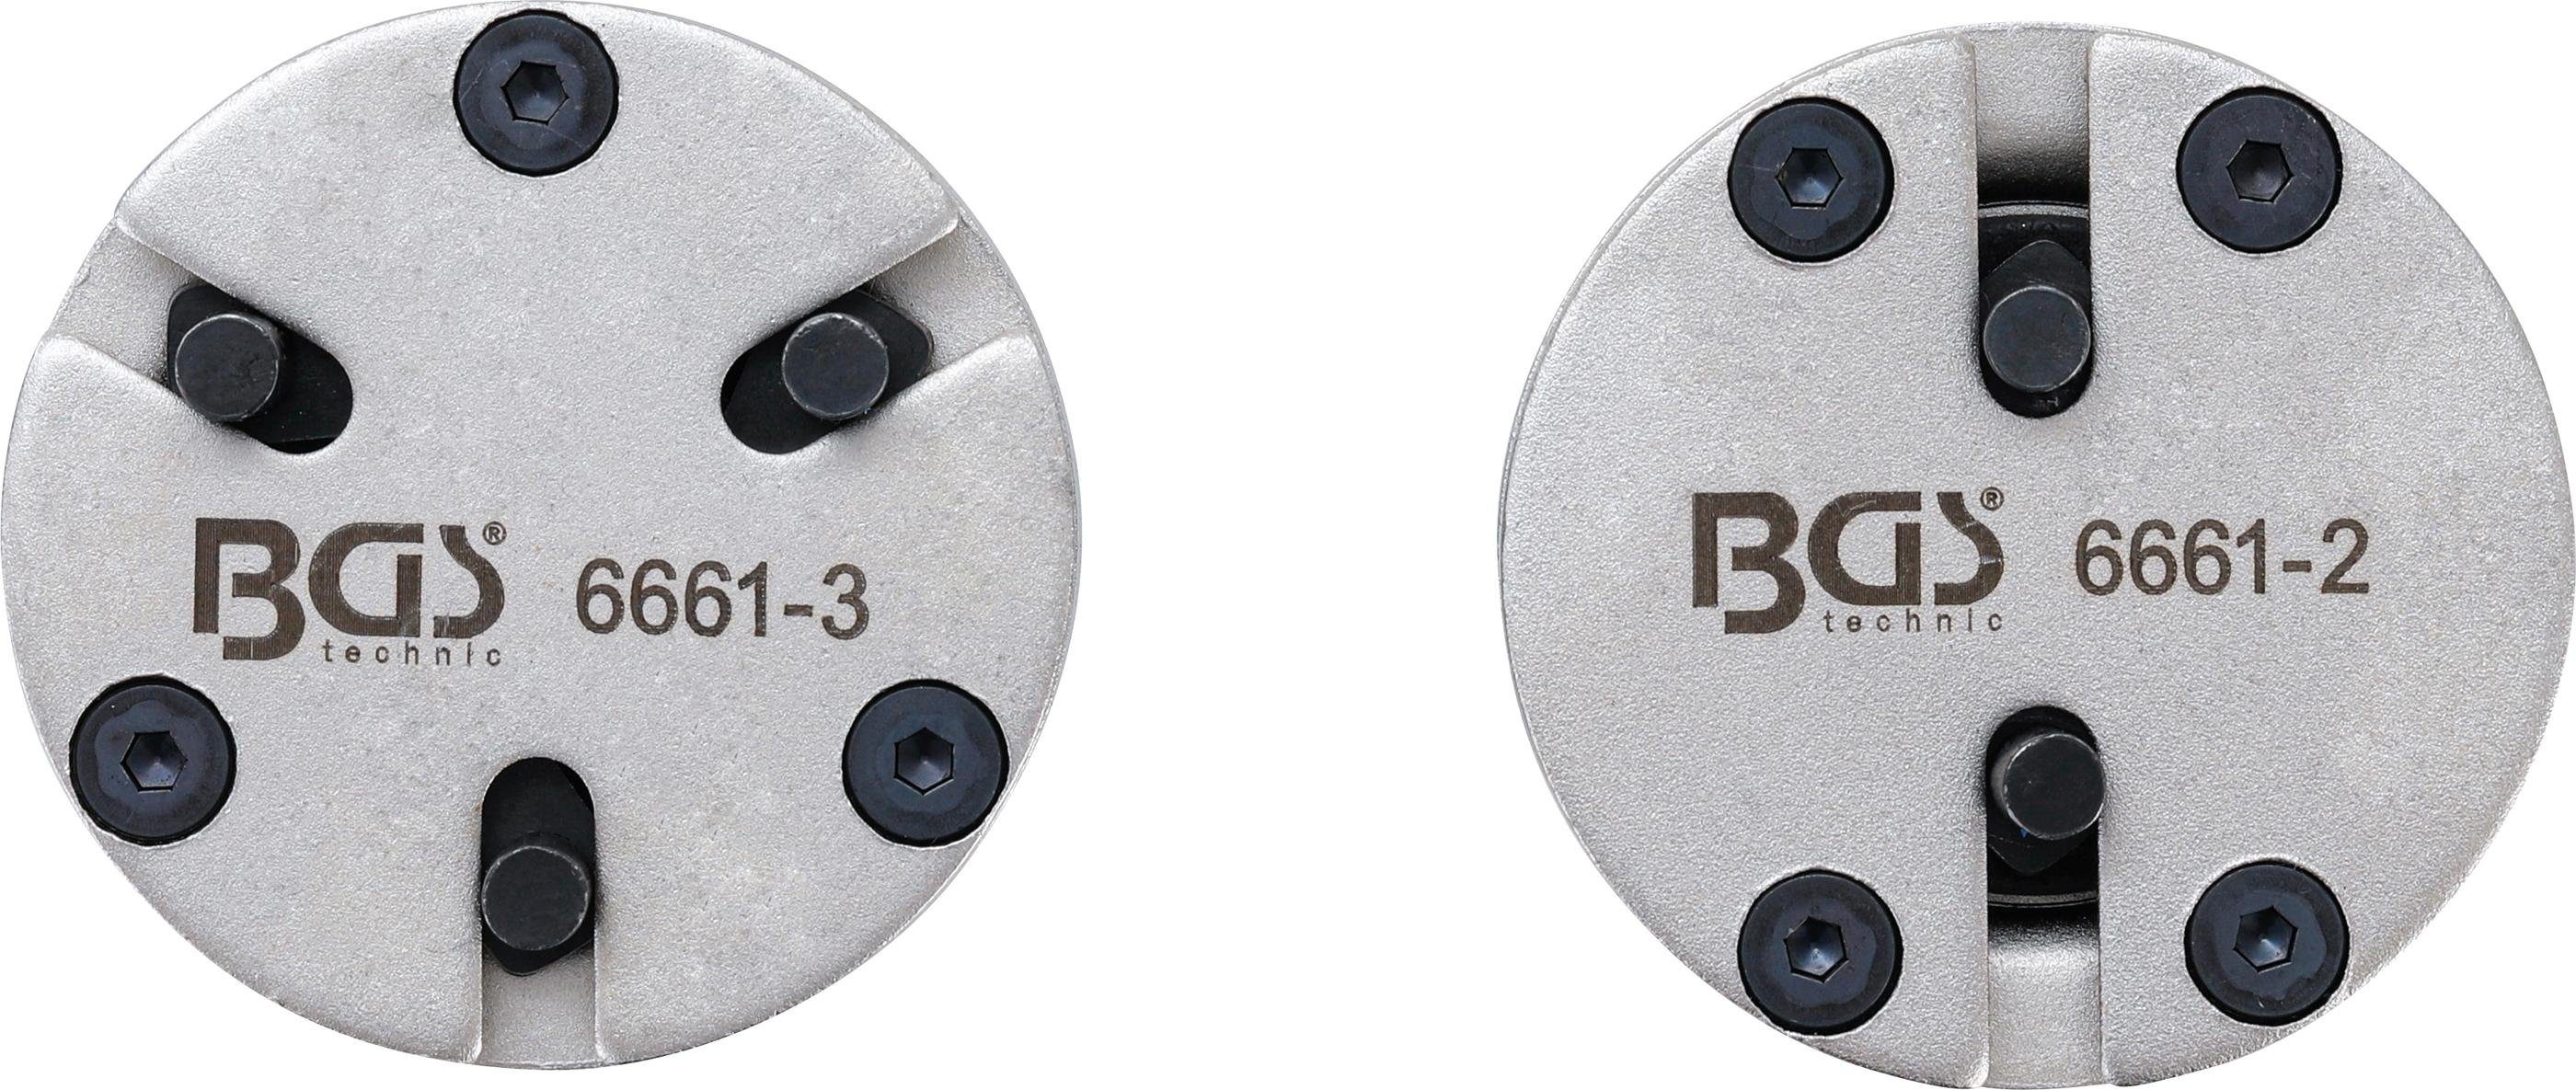 BGS technic Bremsscheibe Bremskolben-Rückstelladapter-Satz, universal, mit  2 & 3 Stiften,